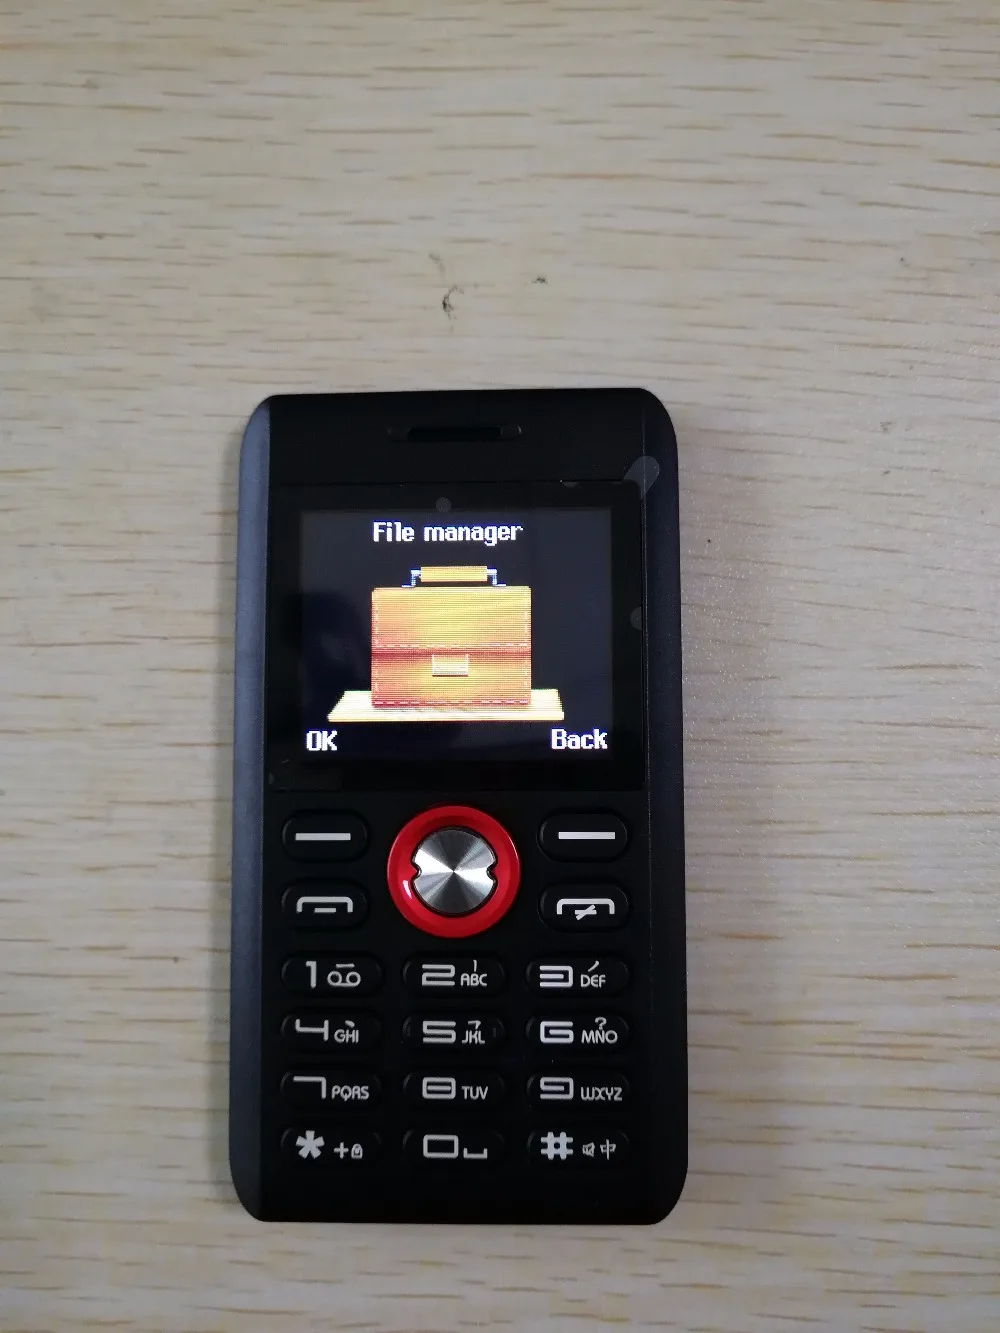 5 шт./лот Melrose M18 мини-карт телефоны ультра-тонкий студенческий мобильный телефон с вибрацией GSM MP3 мобильный телефон Самая низкая цена